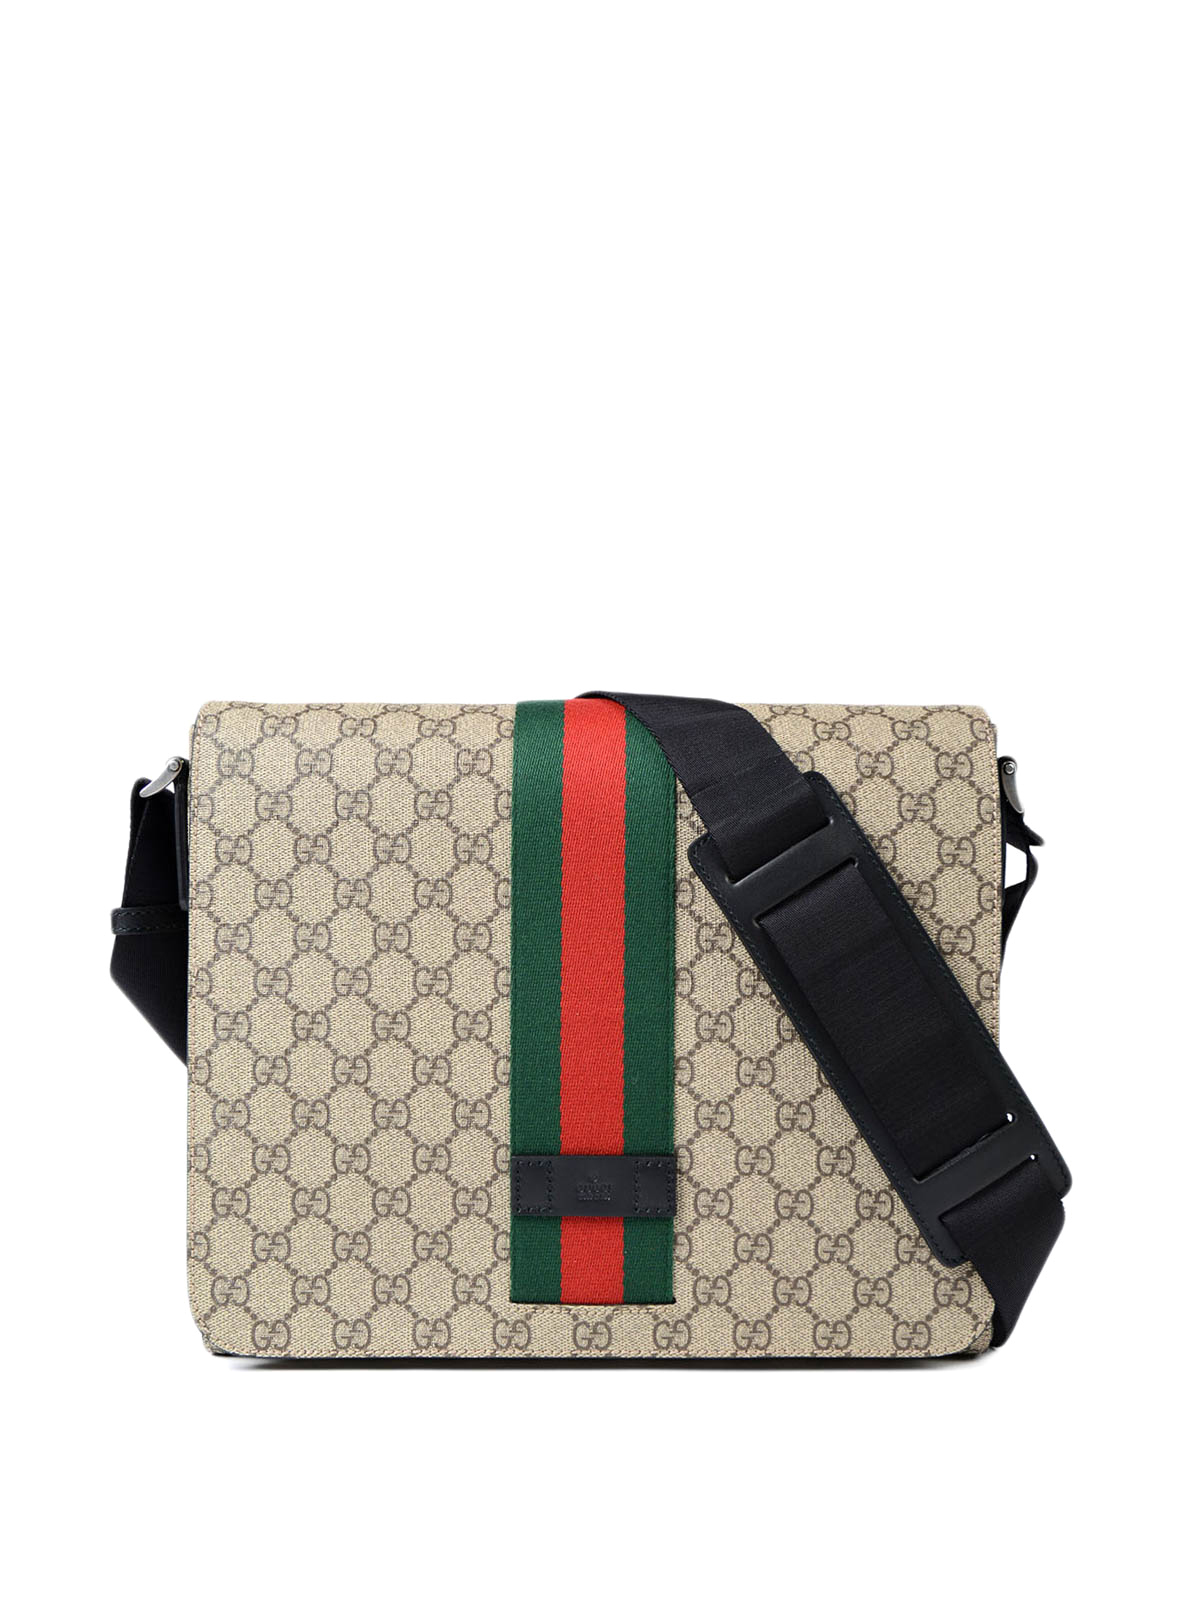 Shoulder bags Gucci - GG Supreme Web fold over bag - 475432KHNGN9692